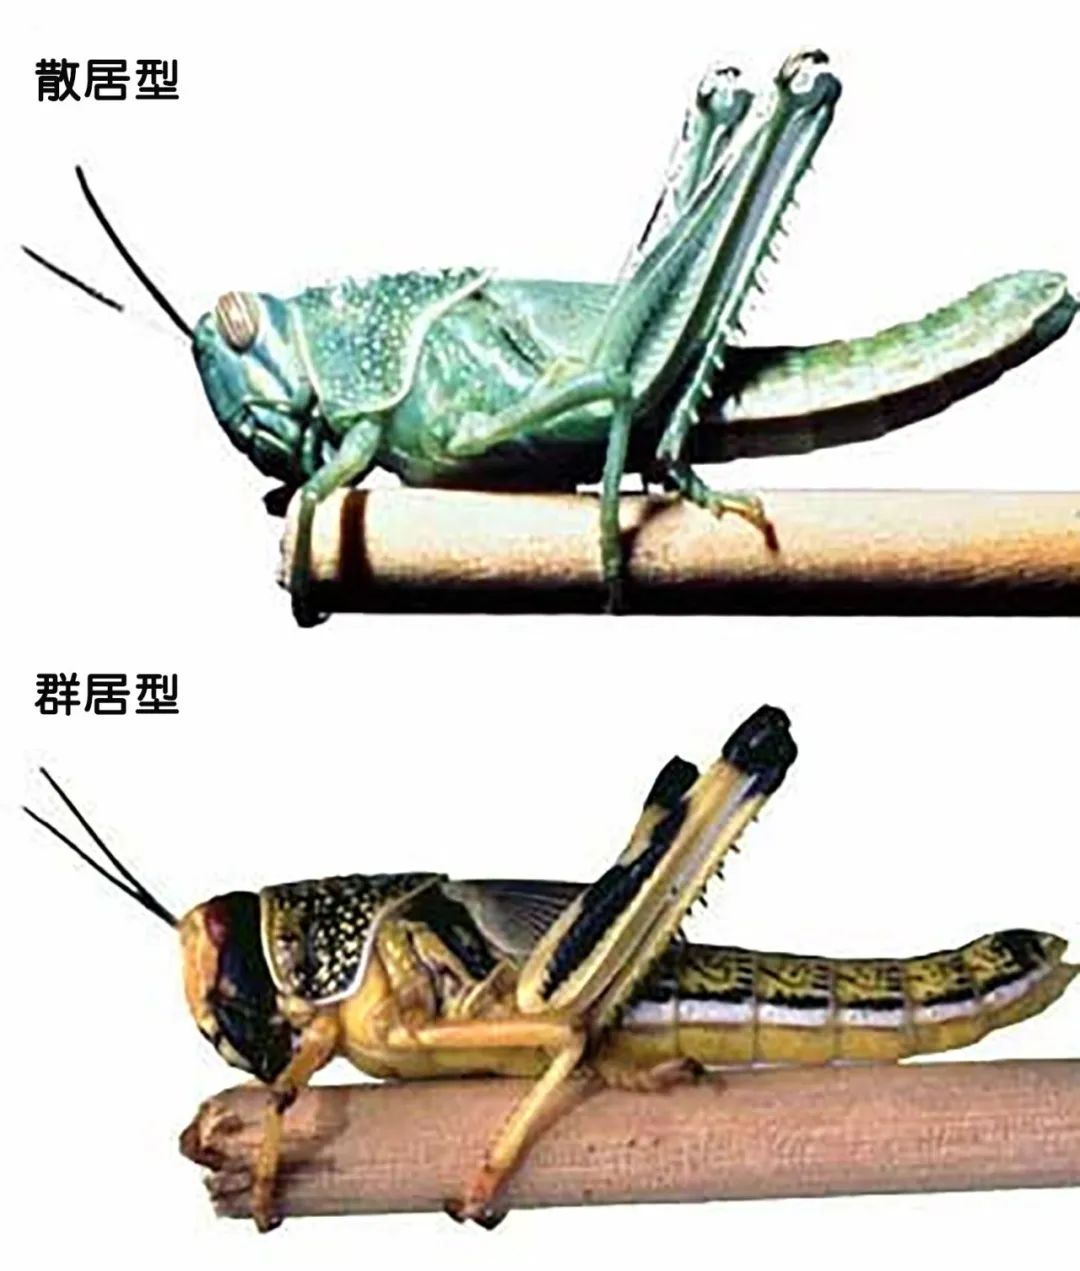 群居型蝗虫在外表上和散居型的有明显区别,散居型蝗虫在后来的龄期中